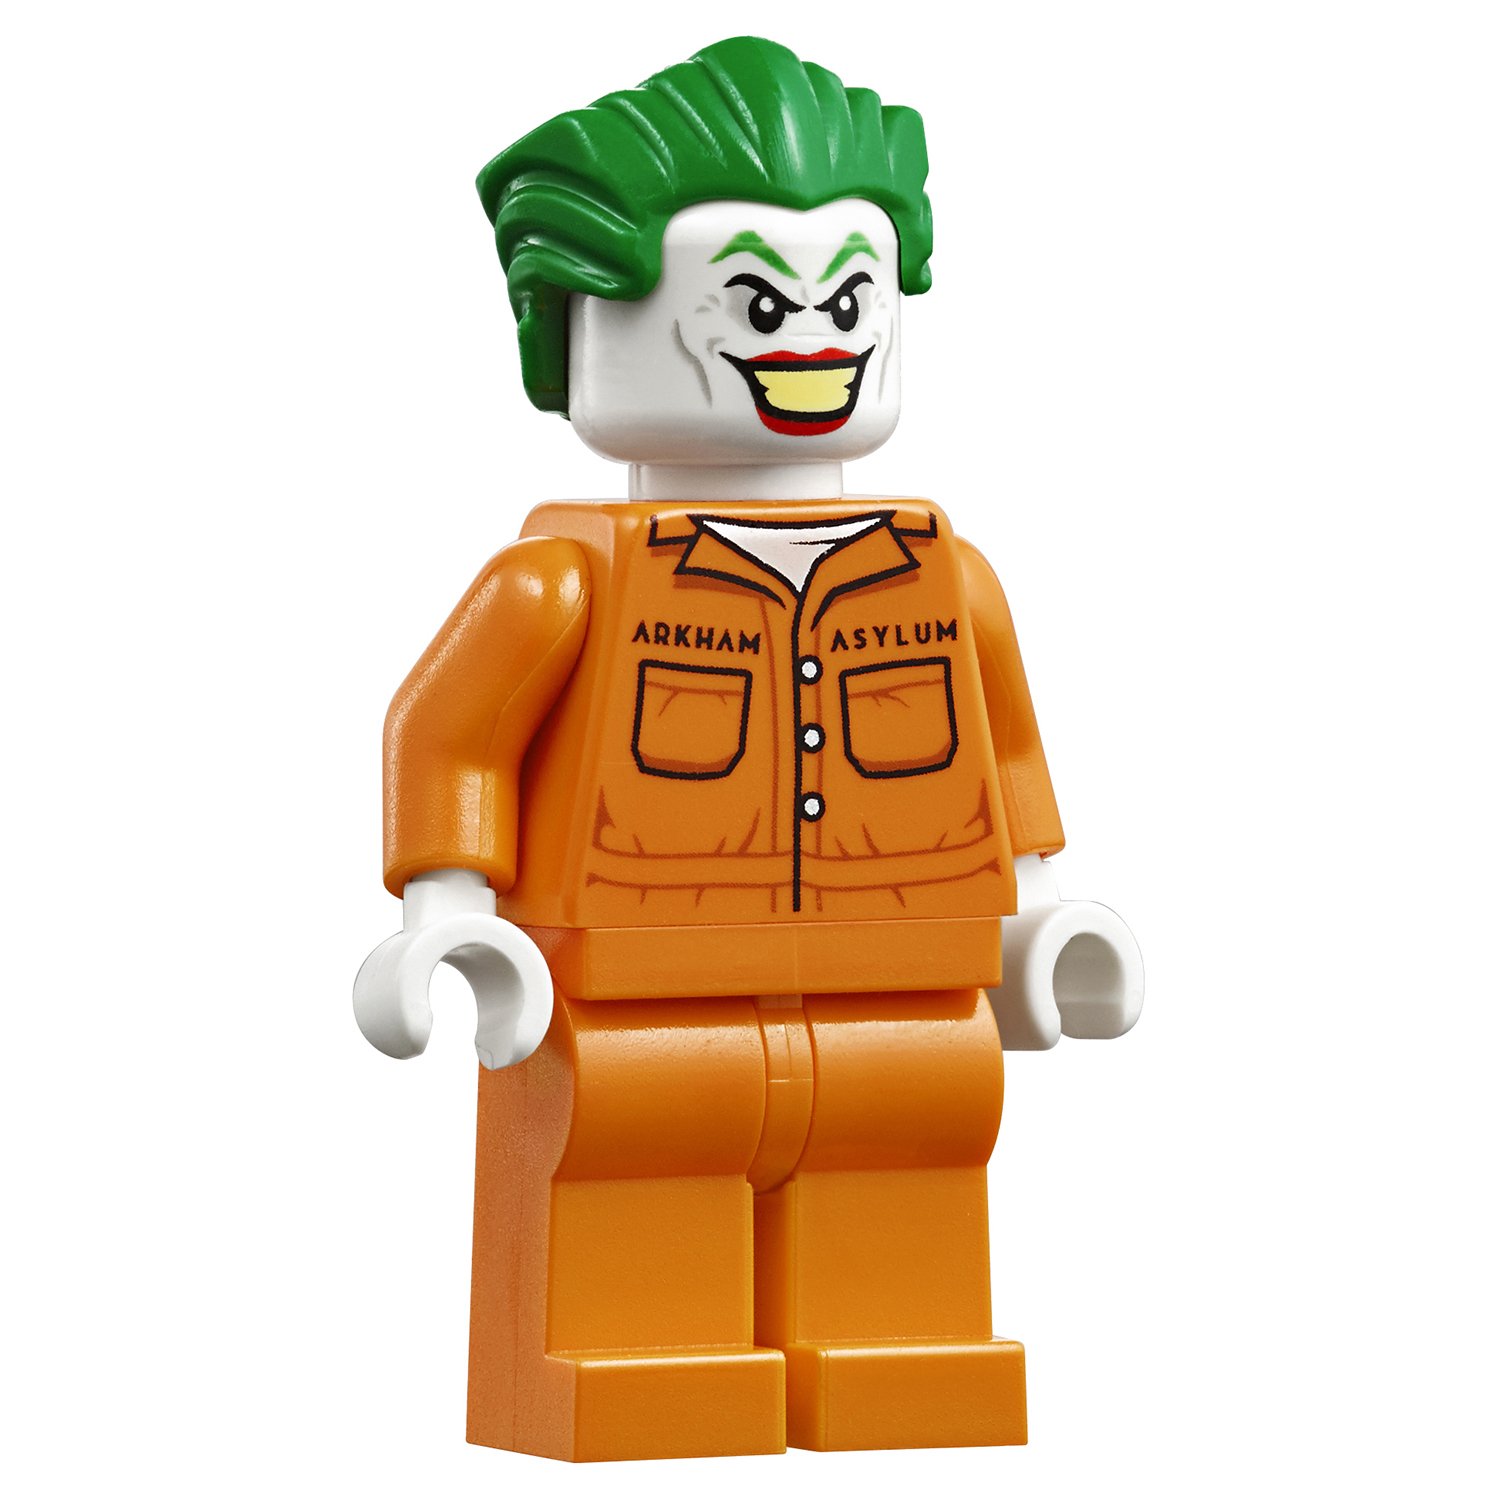 Конструктор Lego® Супер Герои - Бэтмен и побег Джокера  